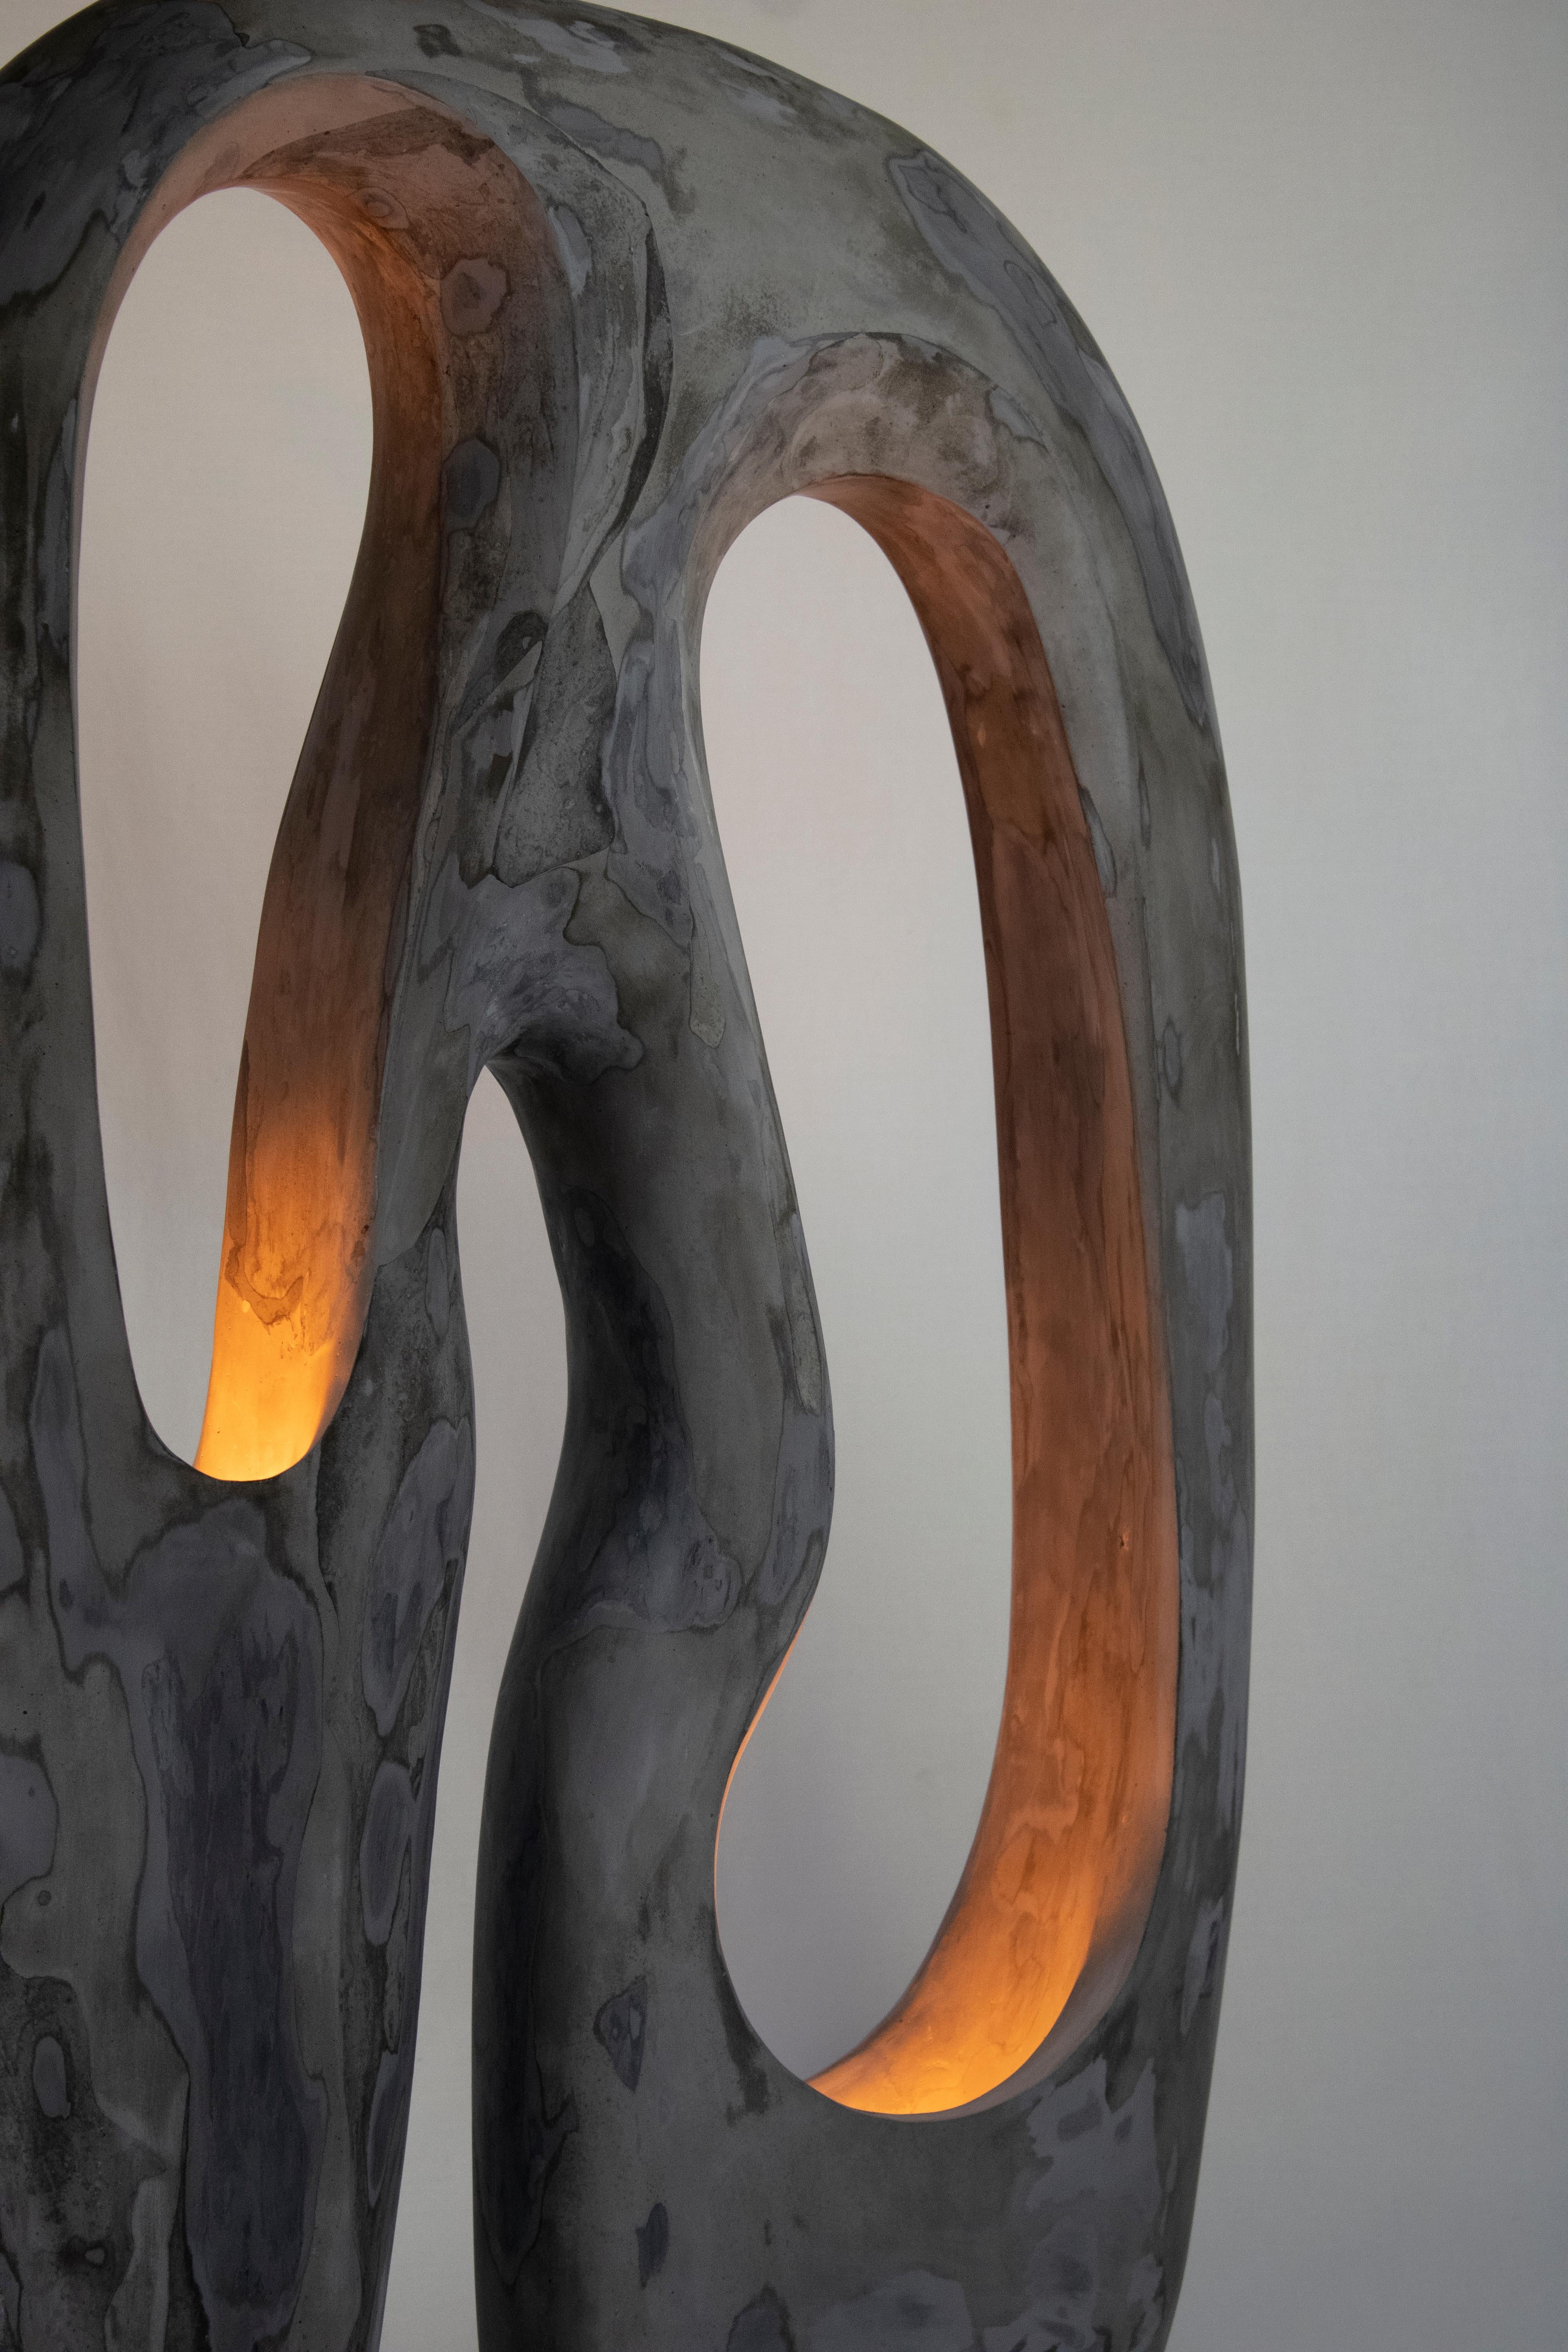 Die Longing Lamp ist eine zeitgenössische, handgefertigte, skulpturale Gipslampe aus der Living Forms Collection. Die Lampe wird in Gips gegossen und von Hand geschnitzt. Die Longing Lamp zeichnet sich durch eine verblüffende Verbindung von Kunst